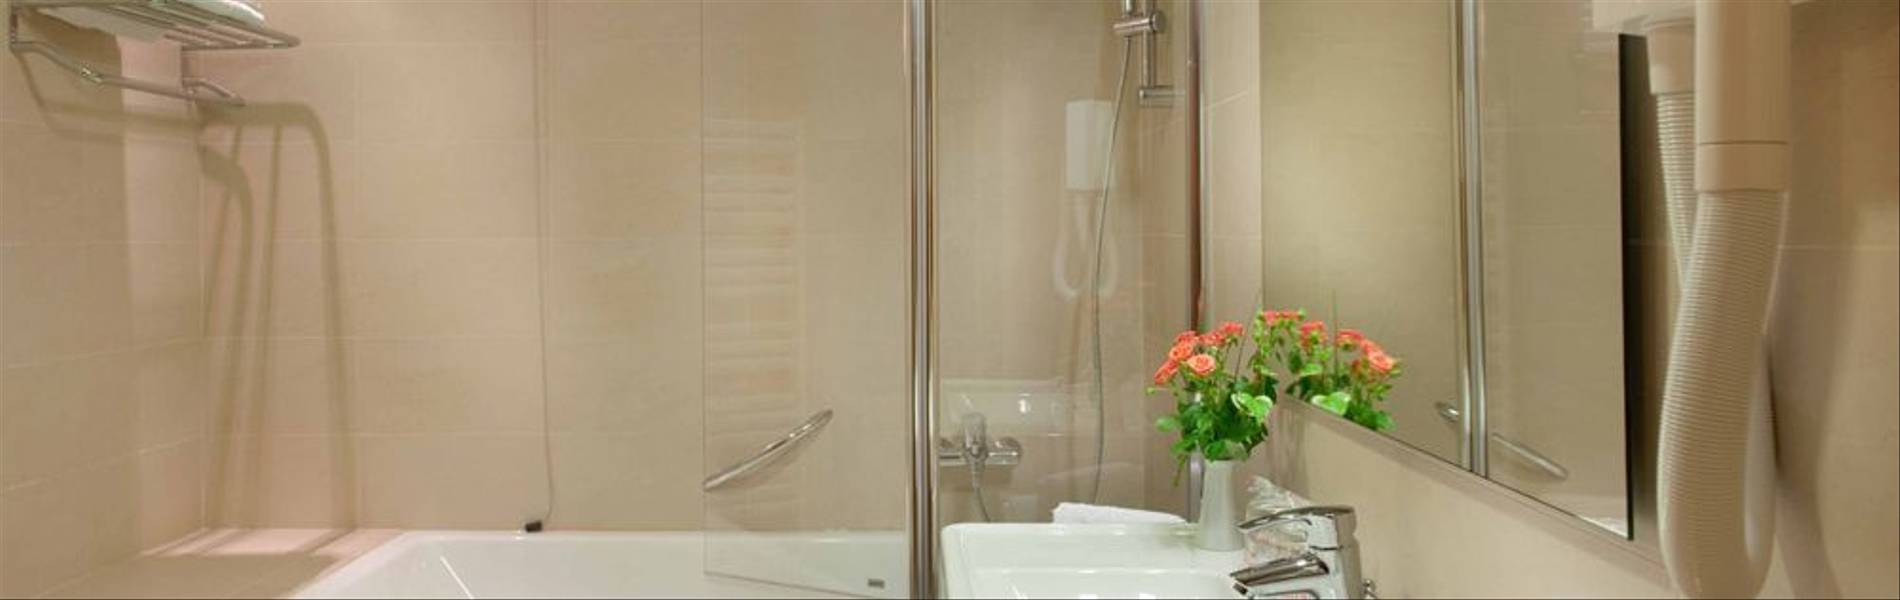 Bathroom-de-luxe-double-room-Hotel-Dubrovnik-Zagreb.jpg